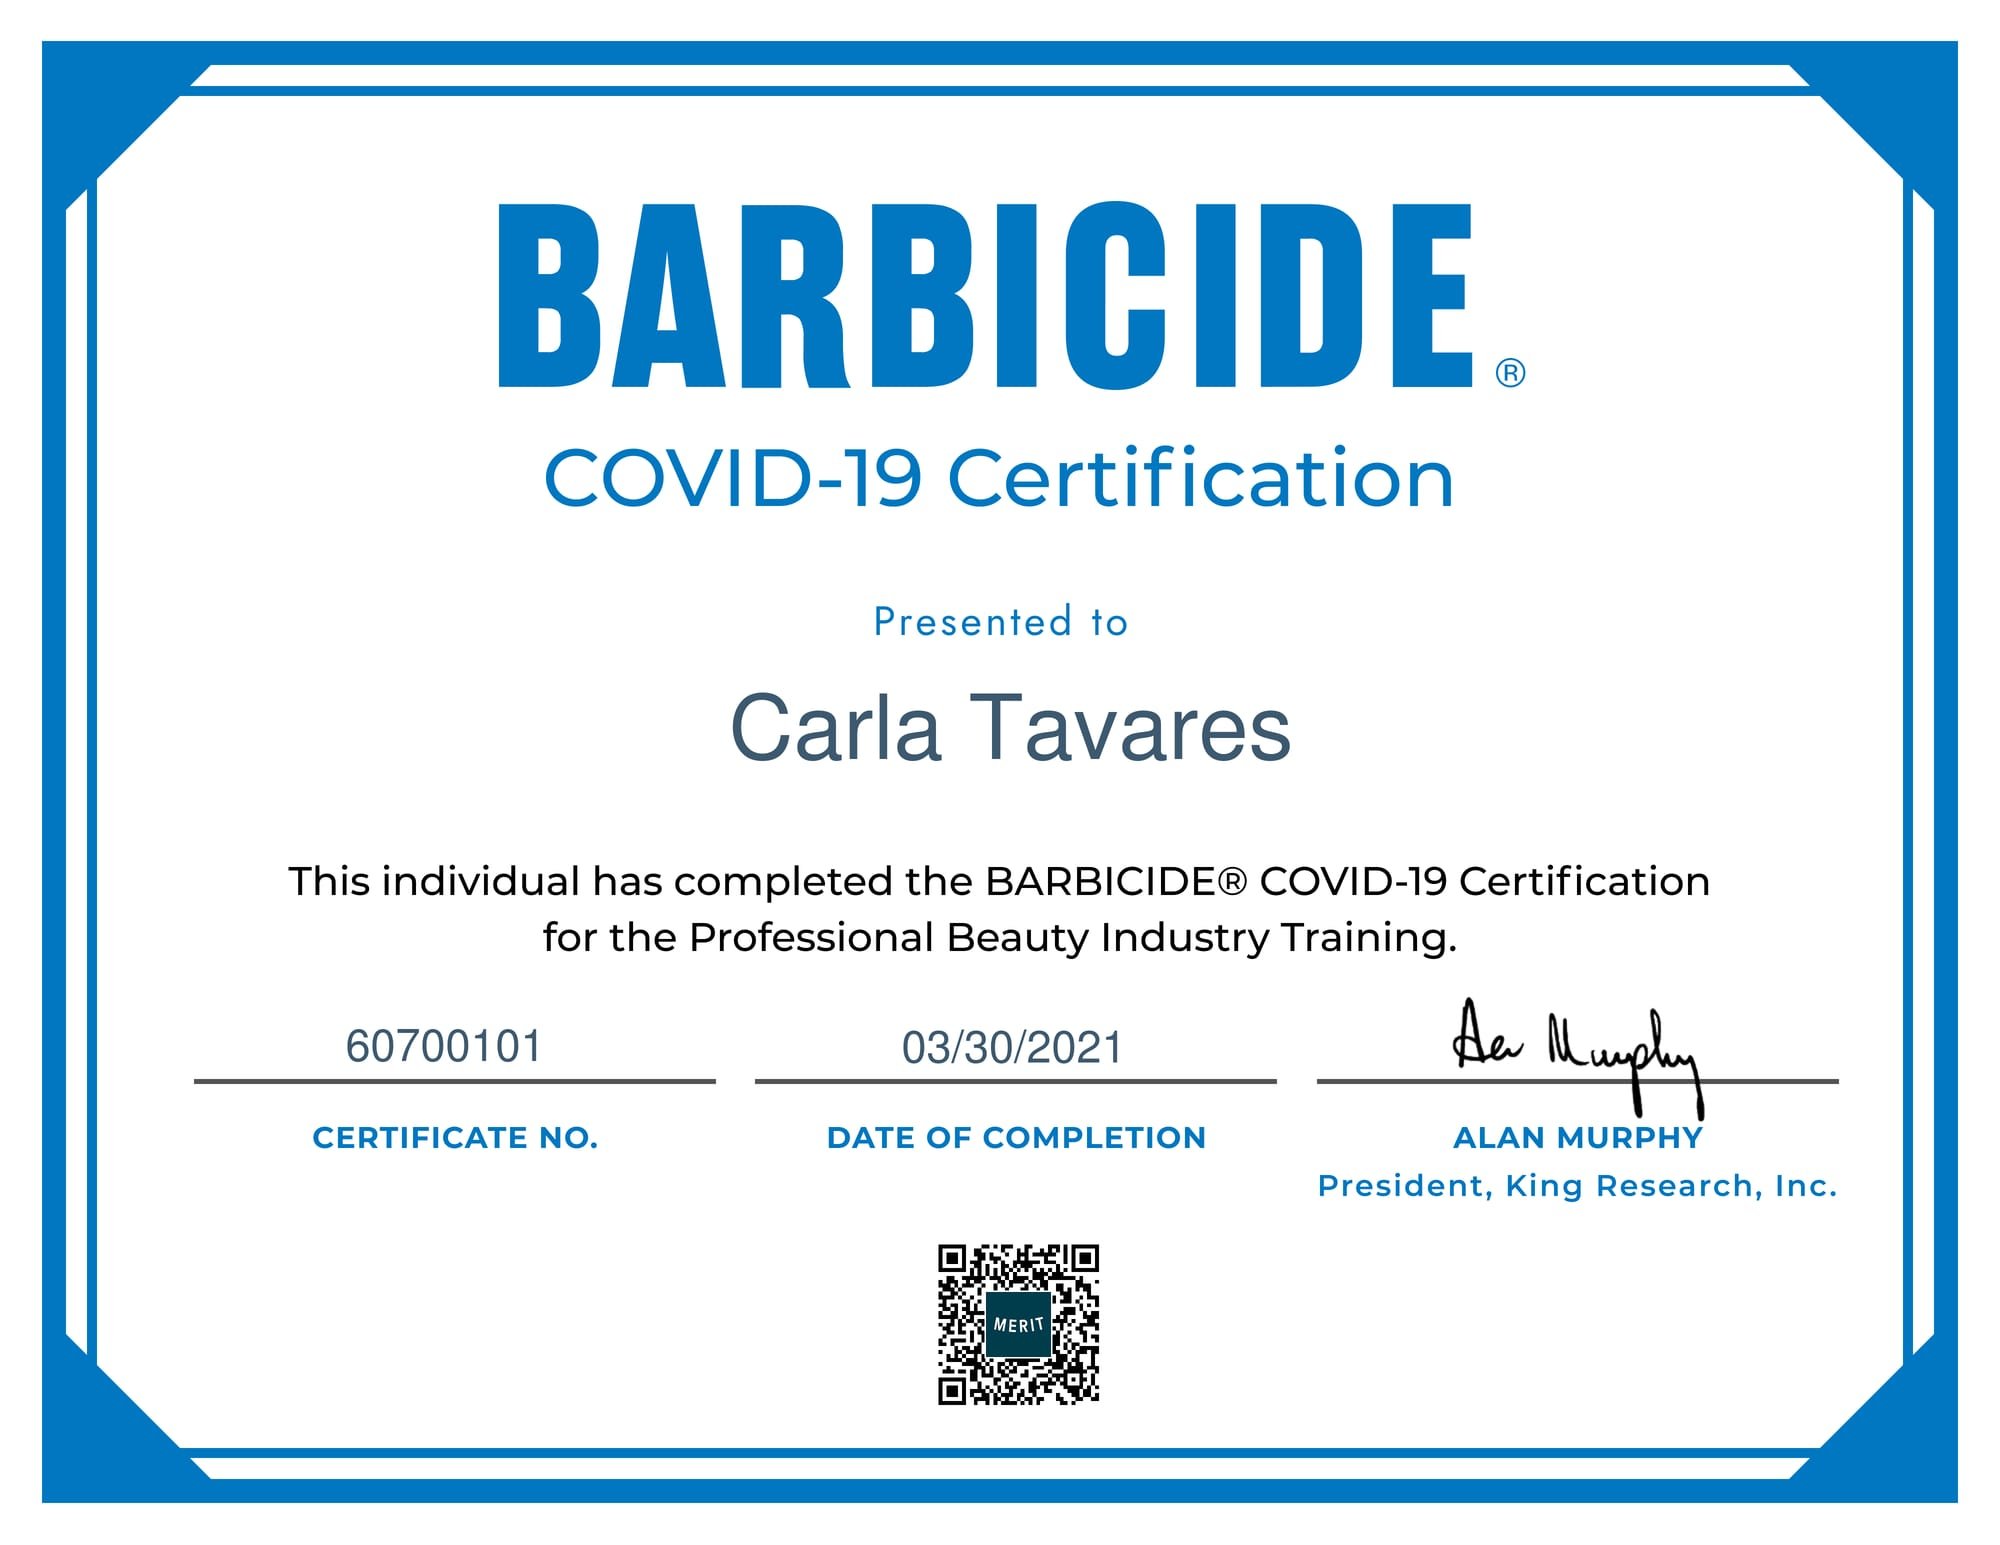 Barbicide COVID-19 Certification